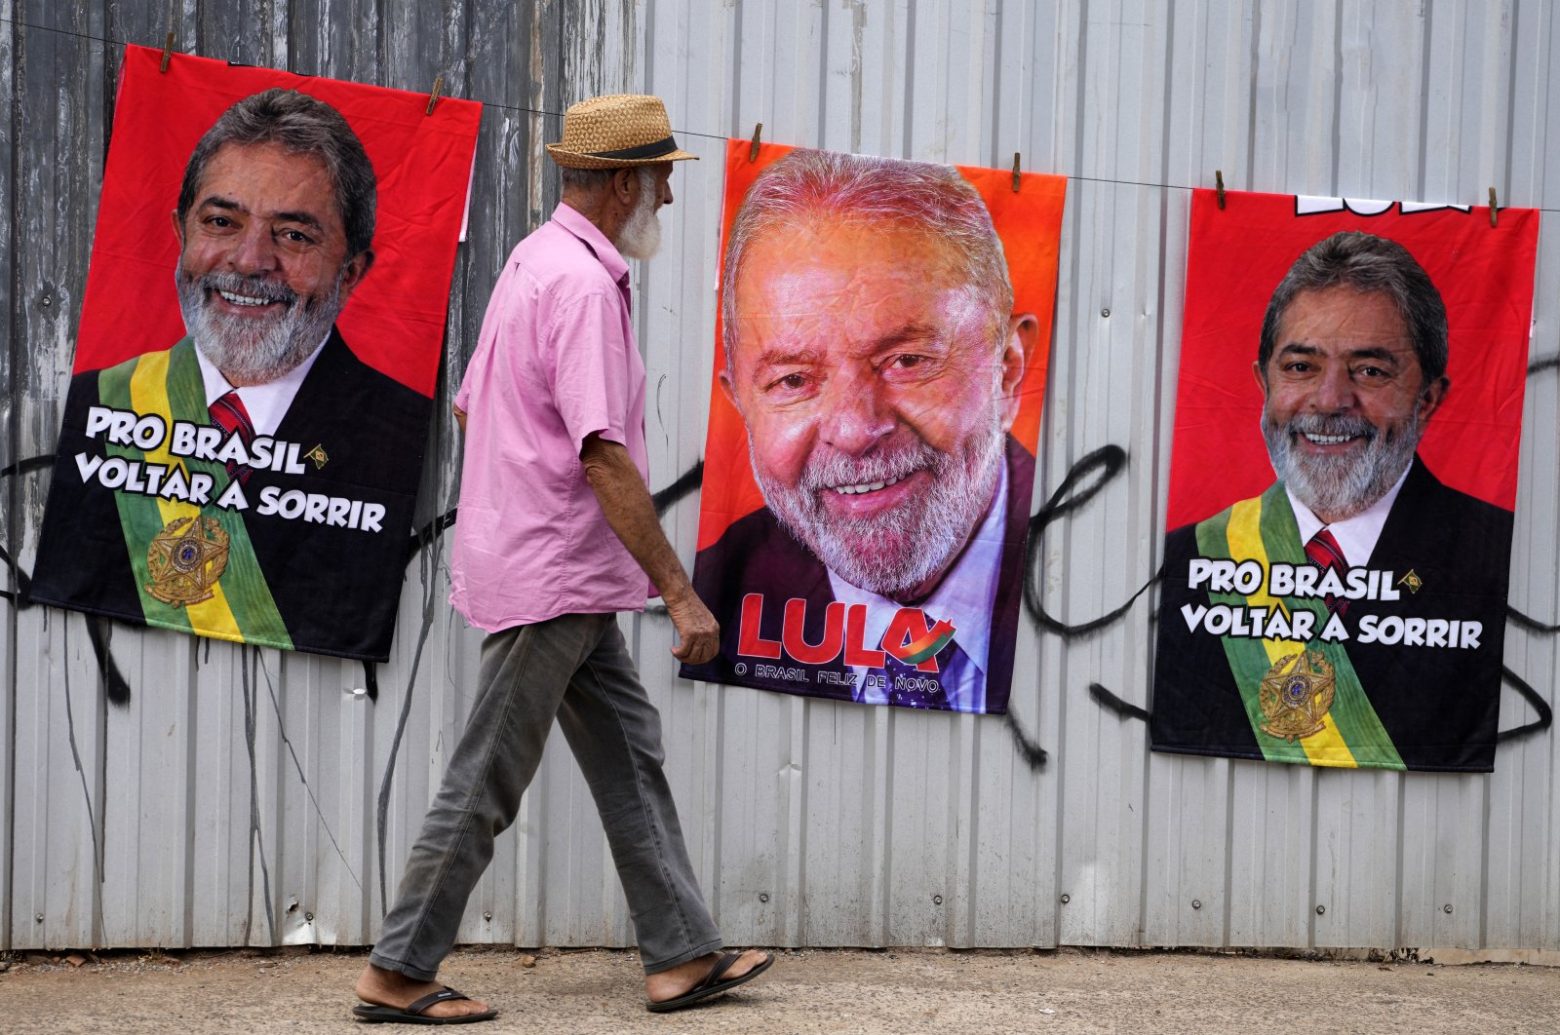 Βραζιλία: Προηγείται με 14 μονάδες ο Λούλα του Μπολσονάρου τρία 24ωρα πριν τις εκλογές